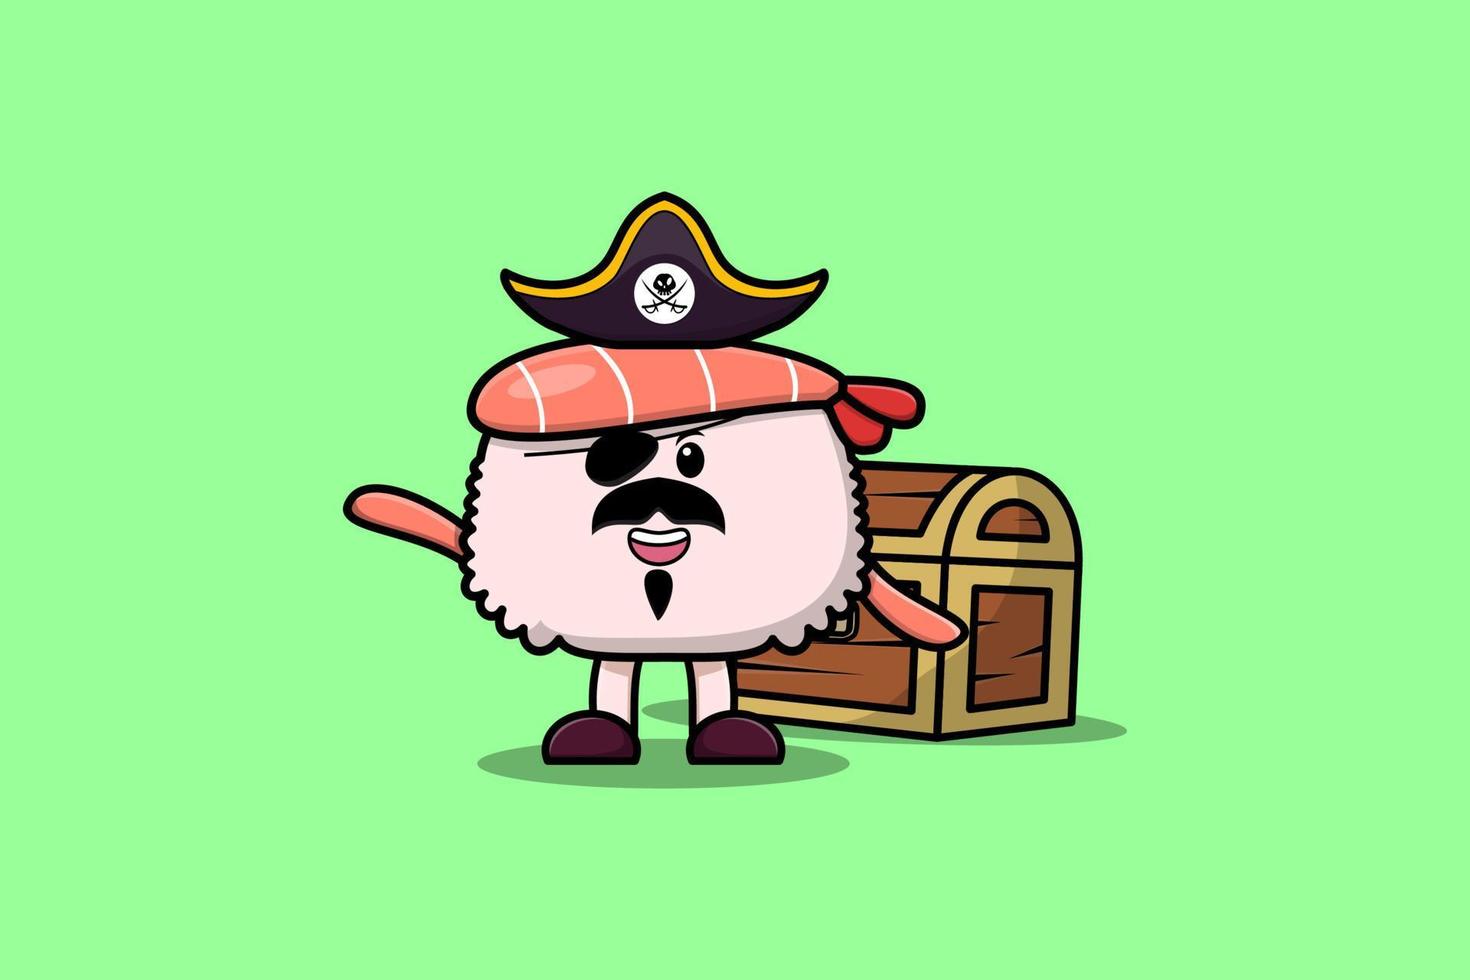 Pirata de camarones de sushi de dibujos animados lindo con caja del tesoro vector